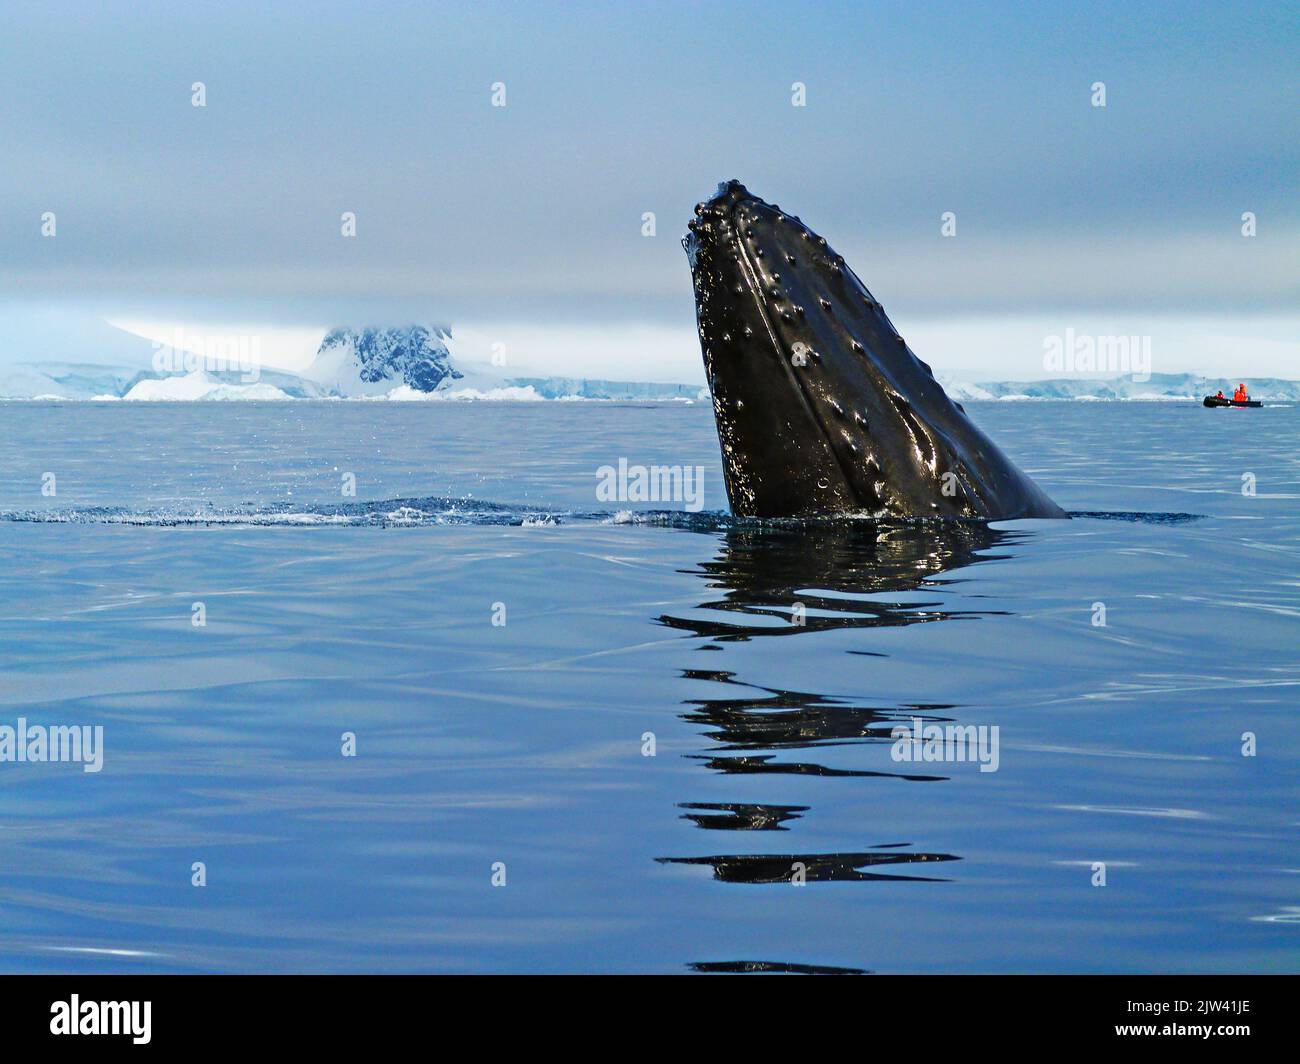 Baleine à bosse adulte (Megaptera novaeangliae), plongée sous-marine dans la baie de Wilhelmina, Antarctique, régions polaires. Fusion des pôles. L'Antarctique est le c Banque D'Images